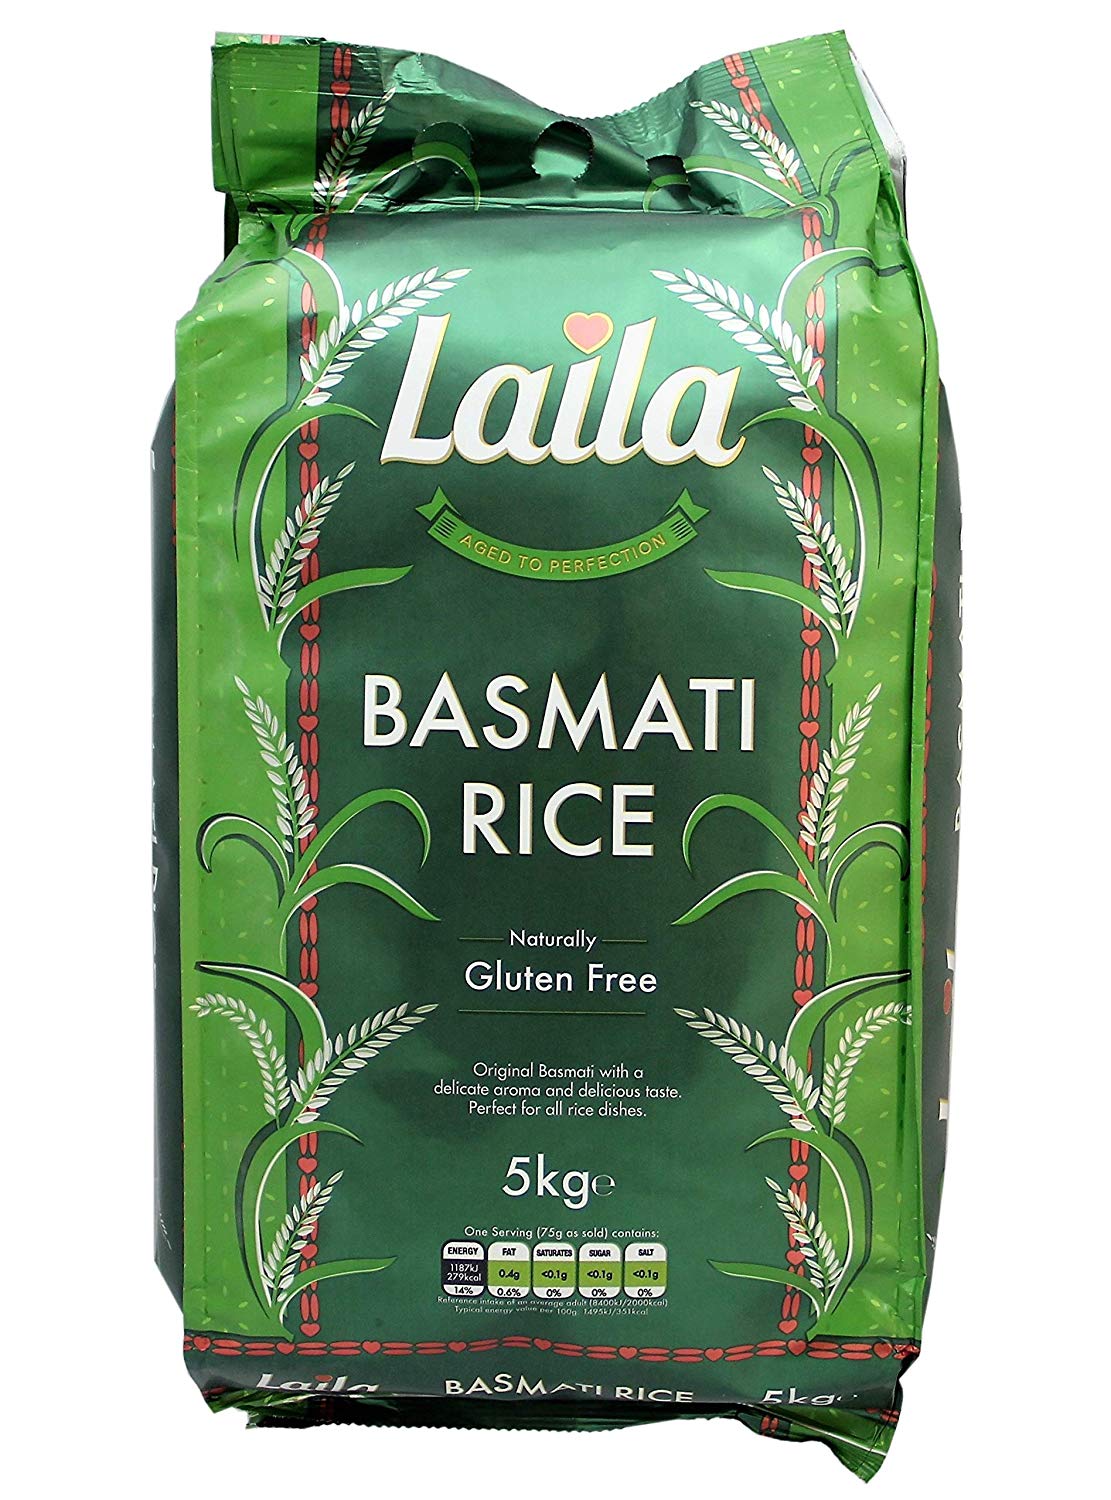 Laila Basmati Rice 1kg